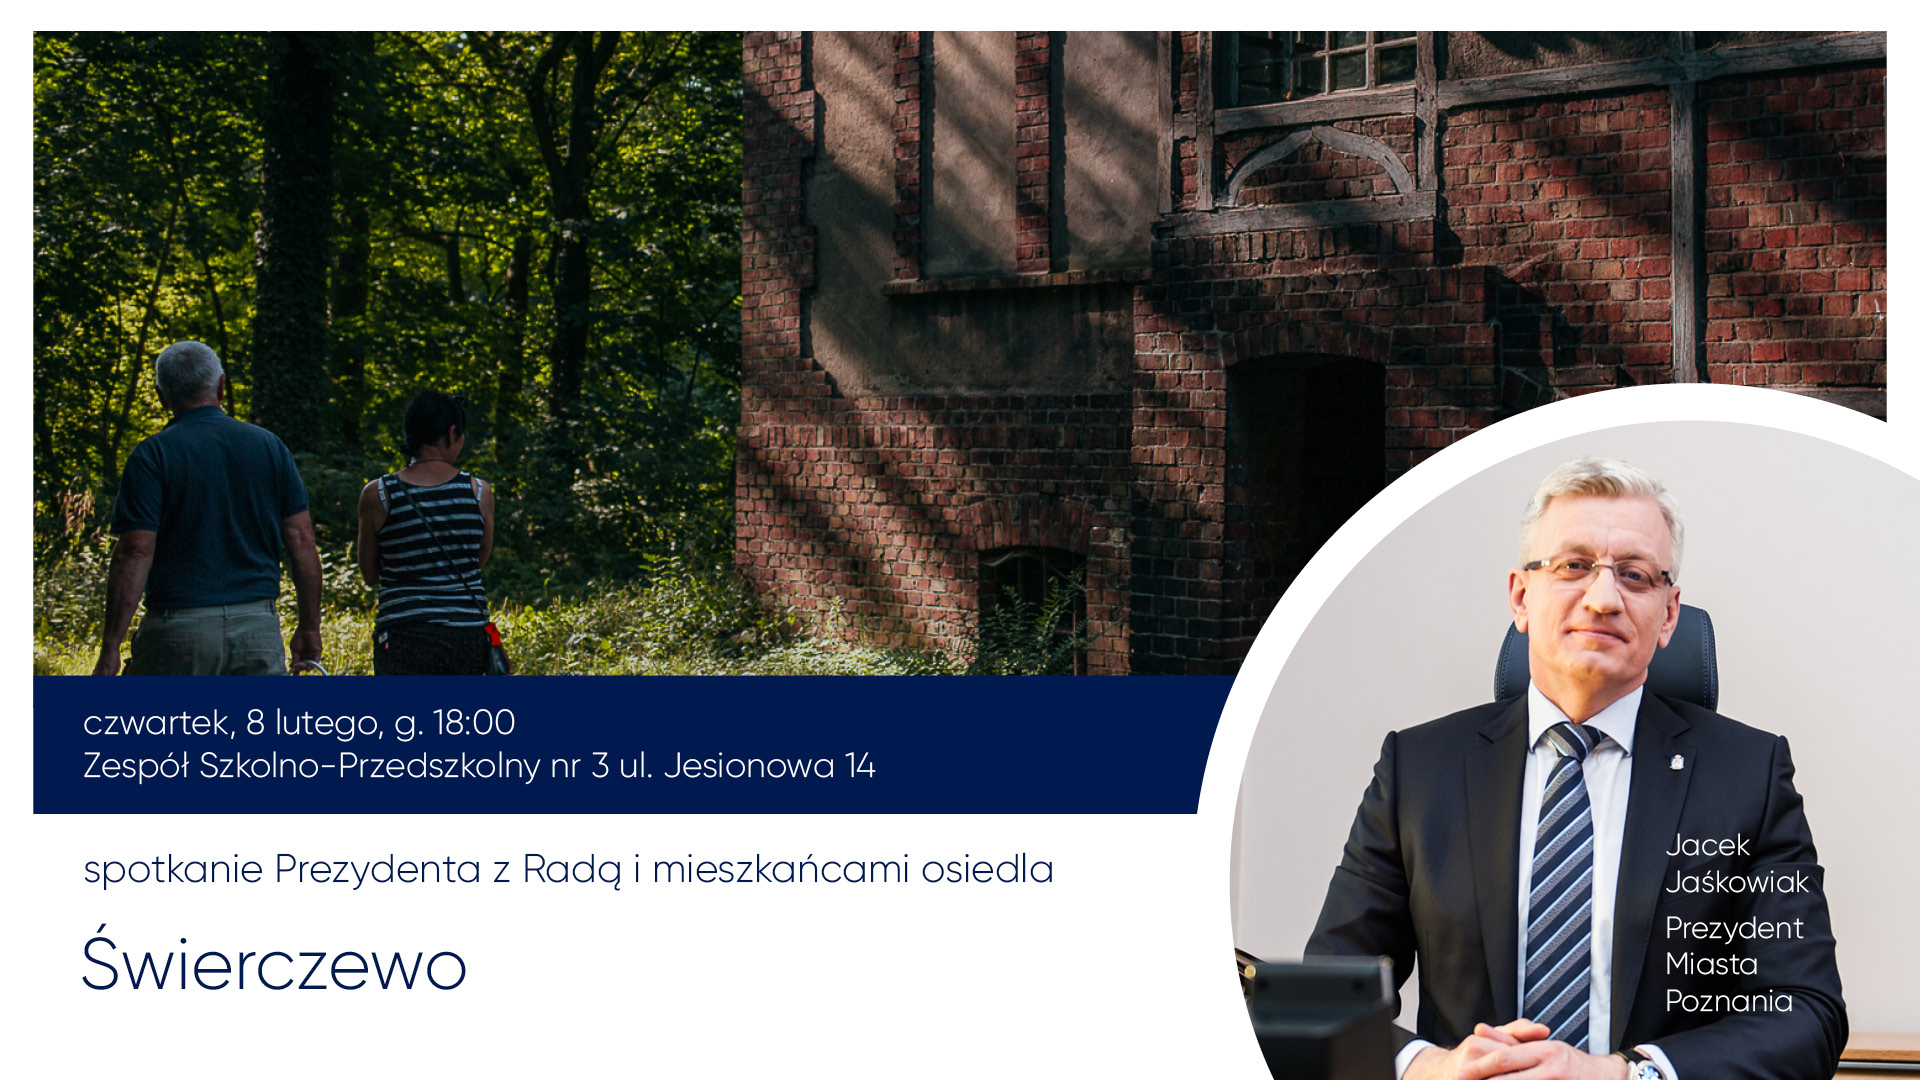 Spotkanie Prezydenta Miasta Poznania z mieszkańcami rozpocznie się o godz. 18.00